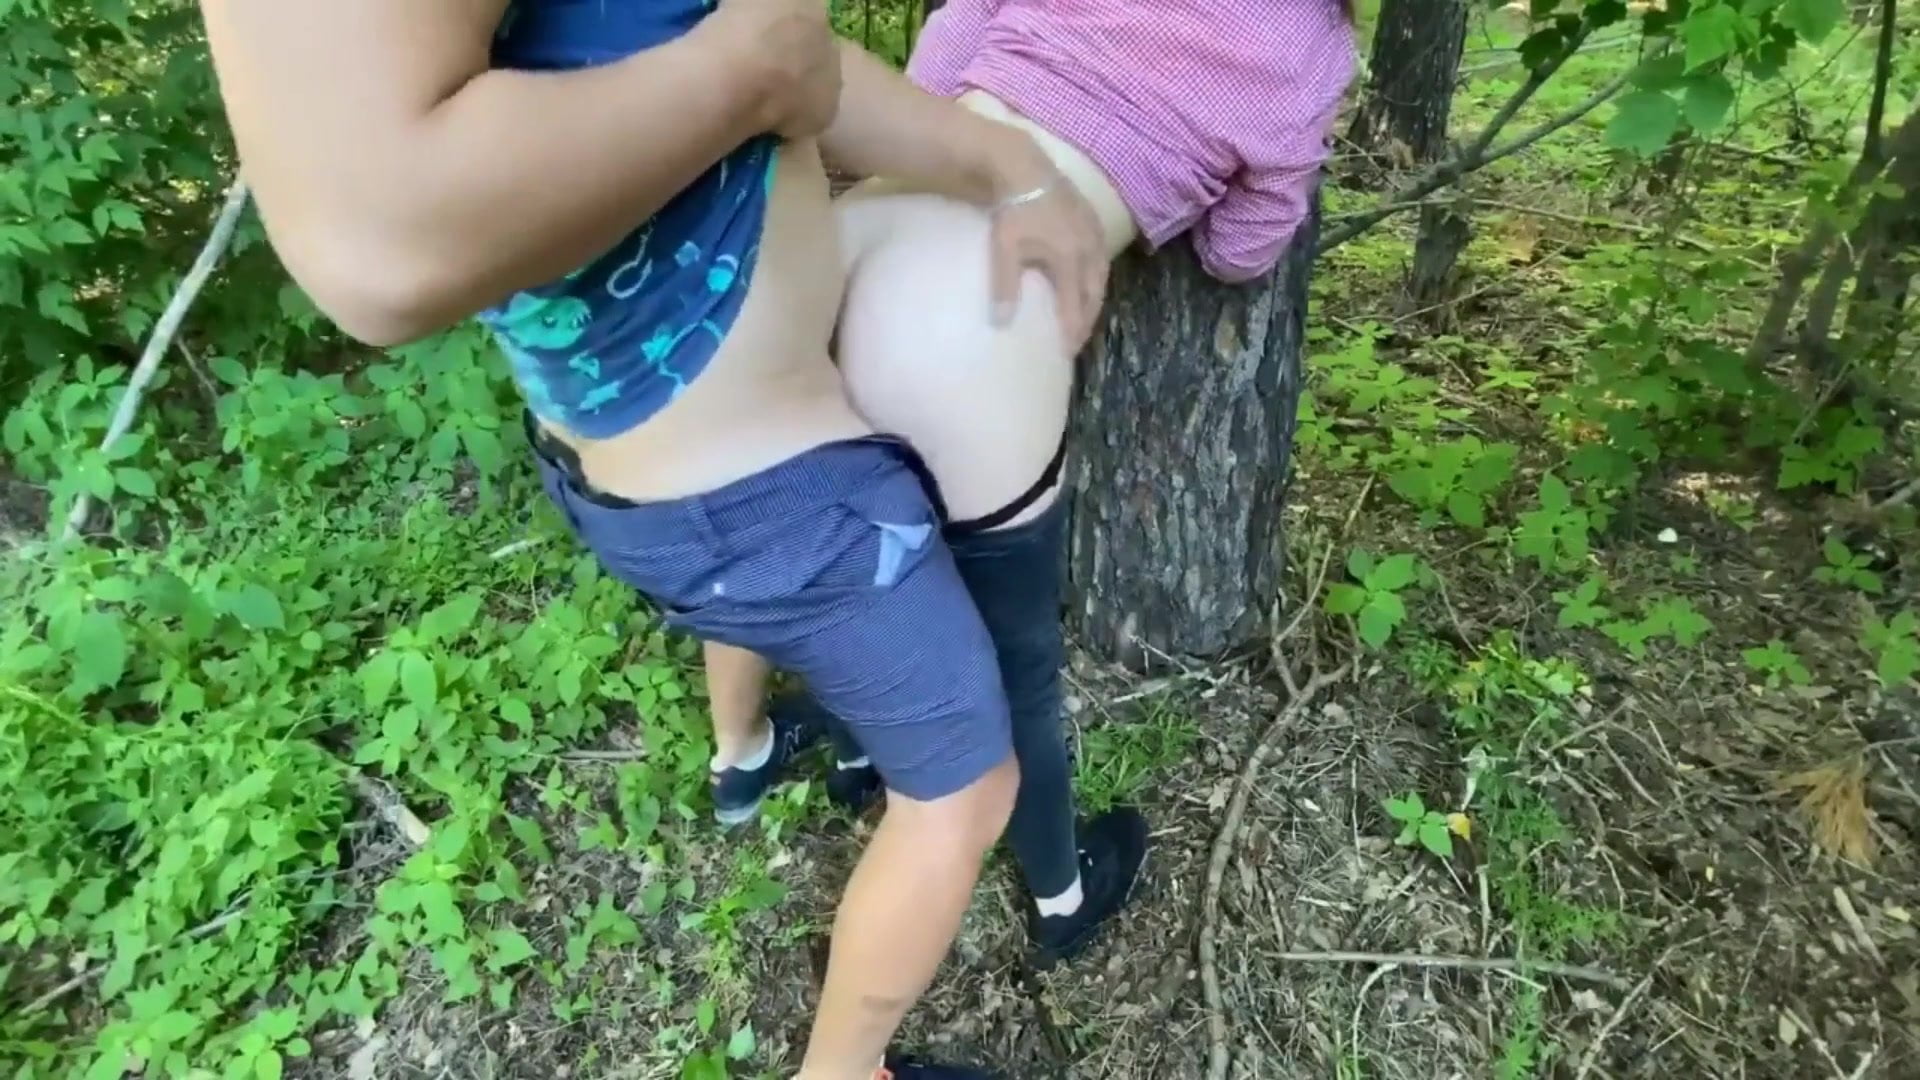 Трое в лесу порно видео. Смотреть видео Трое в лесу и скачать на телефон на сайте Pornomotor